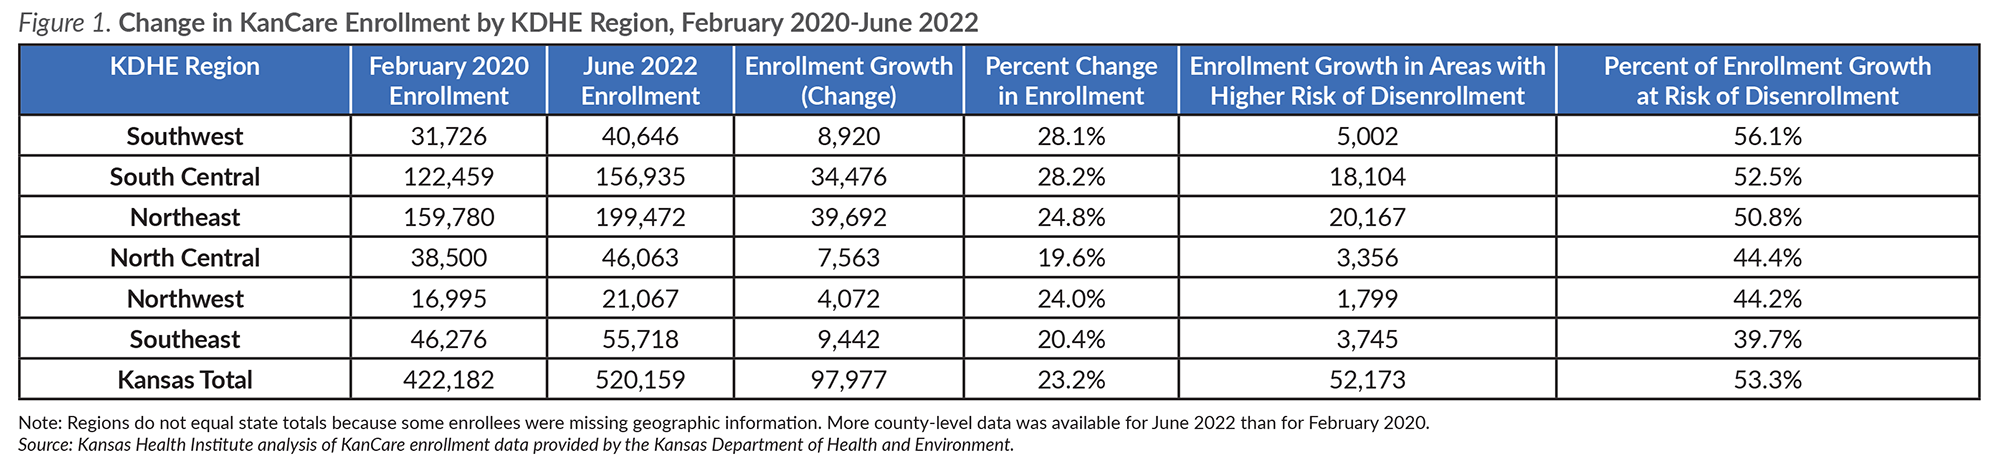 Change in Kancare Enrollment by KDHE Region, February 2020-June 2022